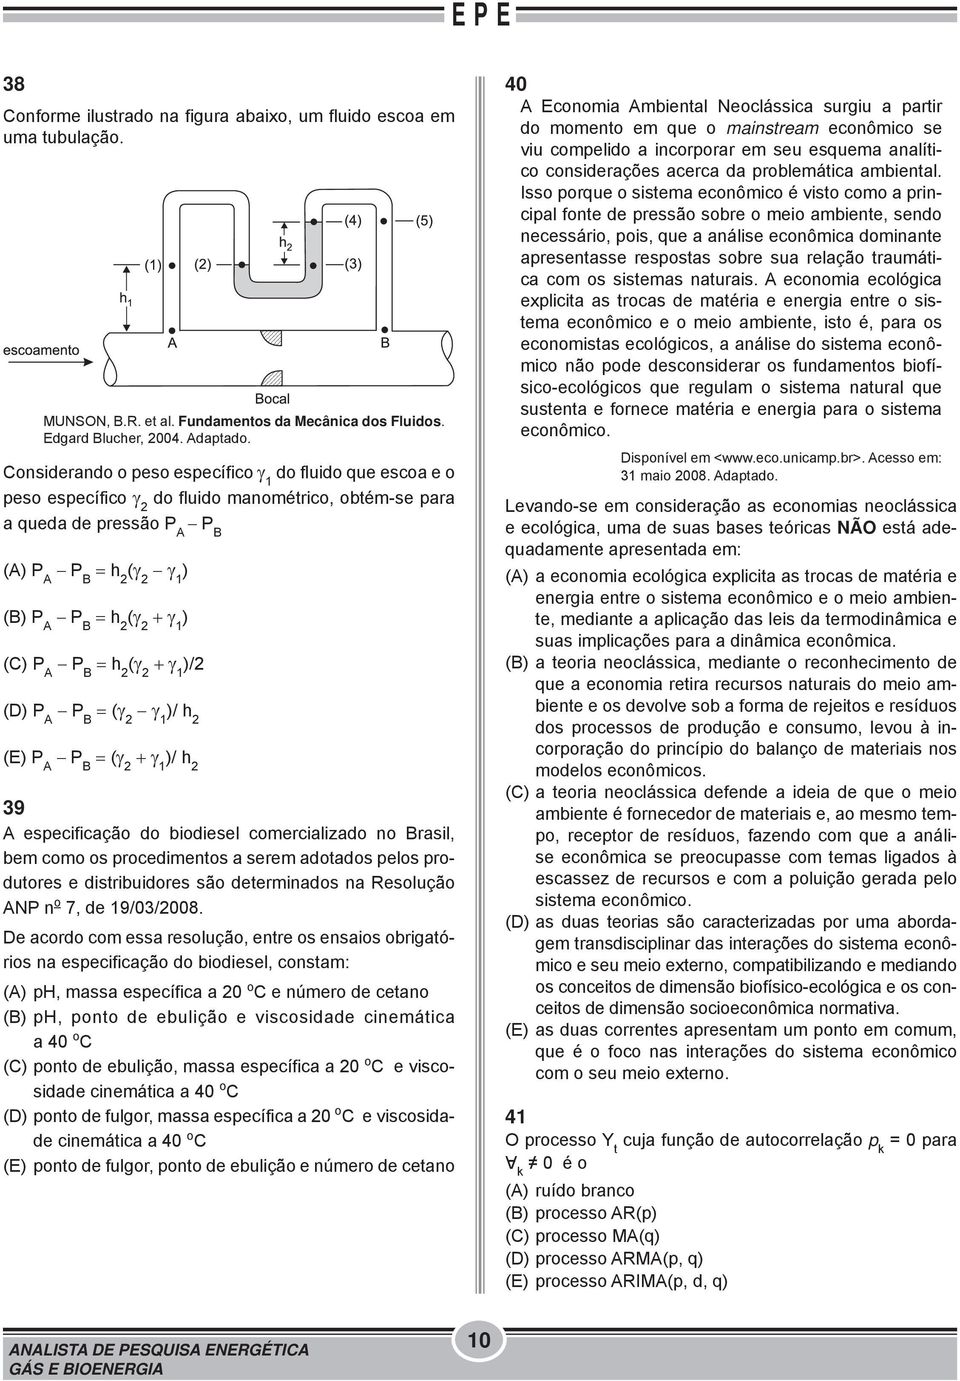 1 ) (C) P A P B = h 2 (γ 2 + γ 1 )/2 (D) P A P B = (γ 2 γ 1 )/ h 2 (E) P A P B = (γ 2 + γ 1 )/ h 2 39 A especificação do biodiesel comercializado no Brasil, bem como os procedimentos a serem adotados